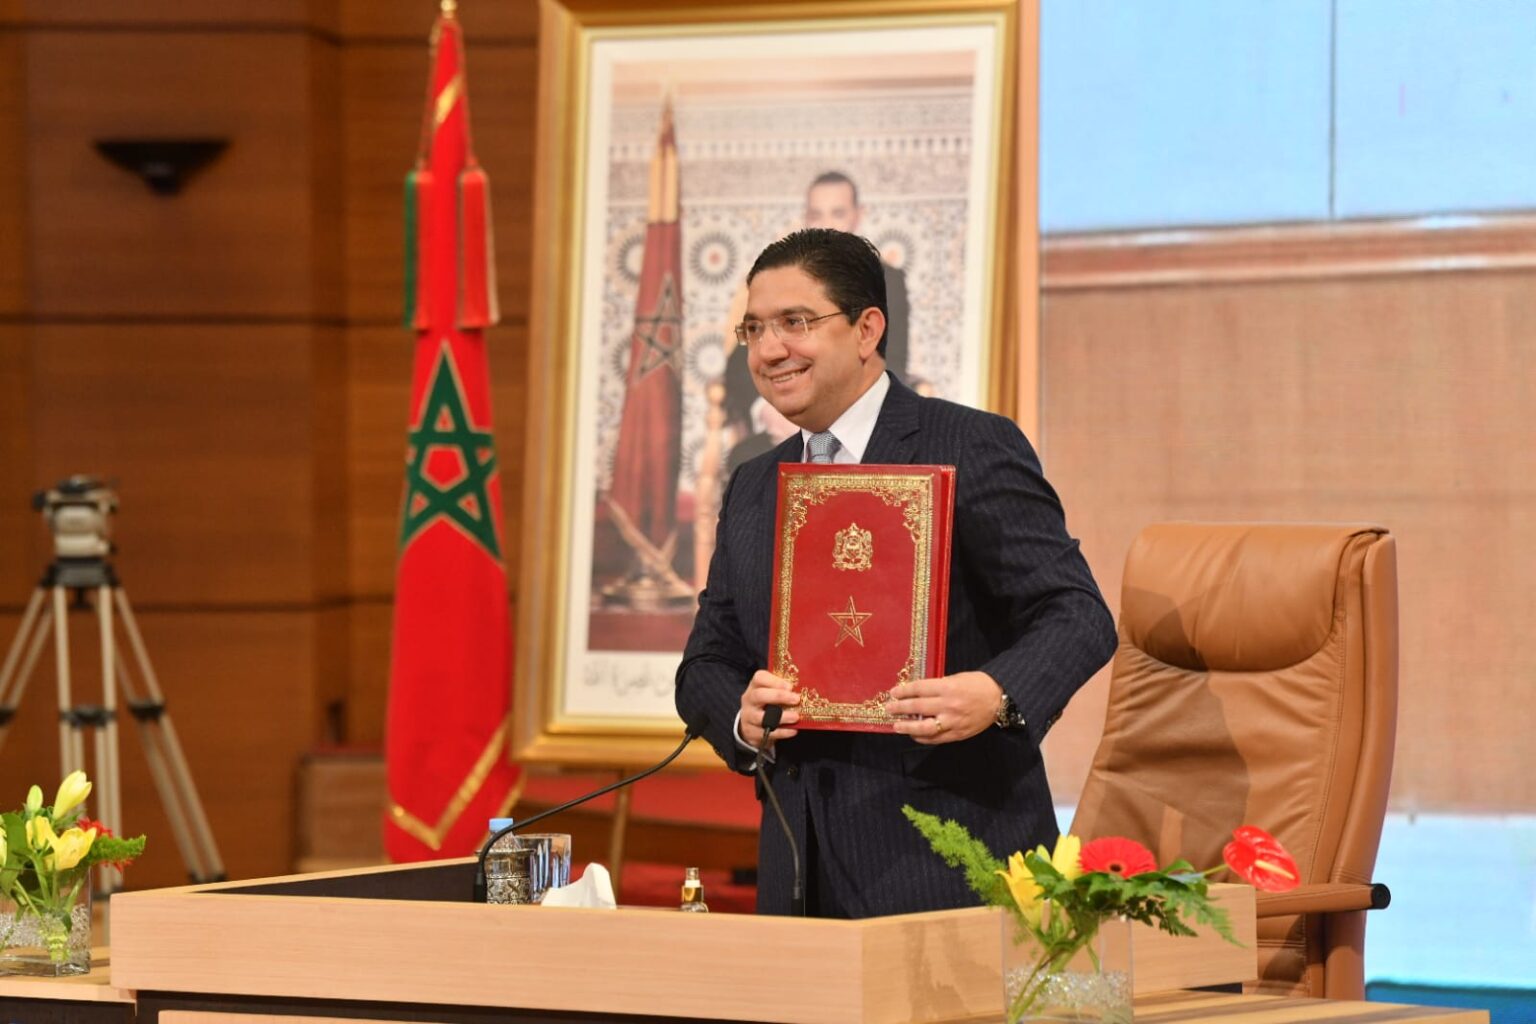 المغرب يدرس إلغاء “الوكَالة” لتسهيل حصول الجالية على بطاقة السوابق القضائية